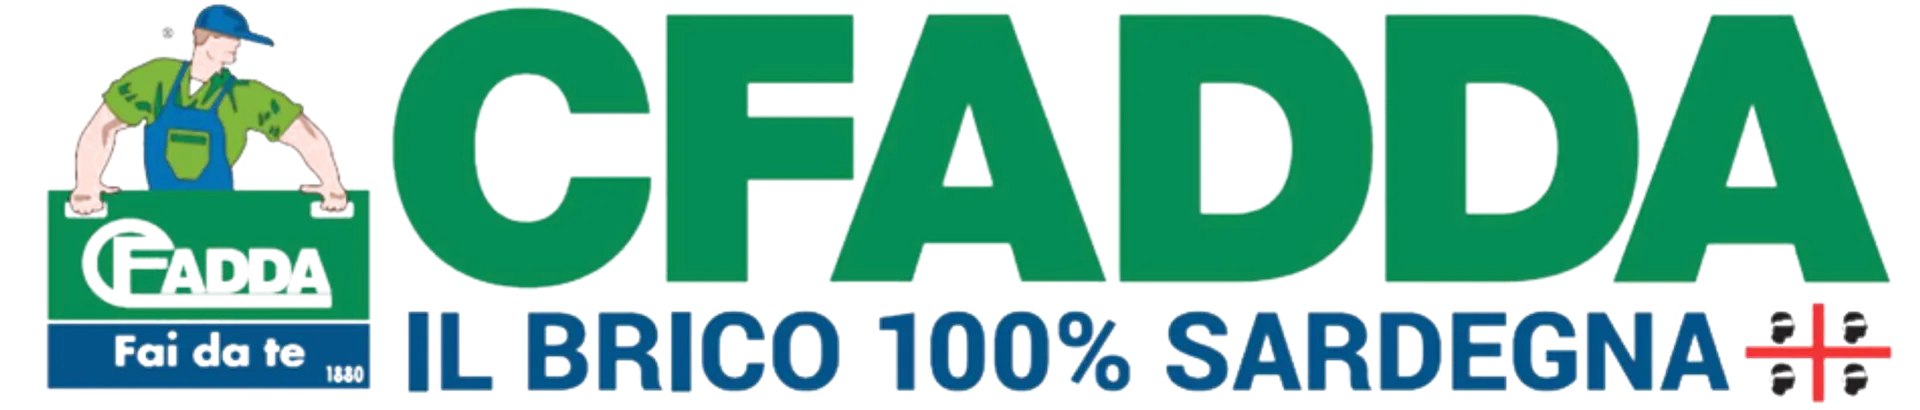 CFADDA logo